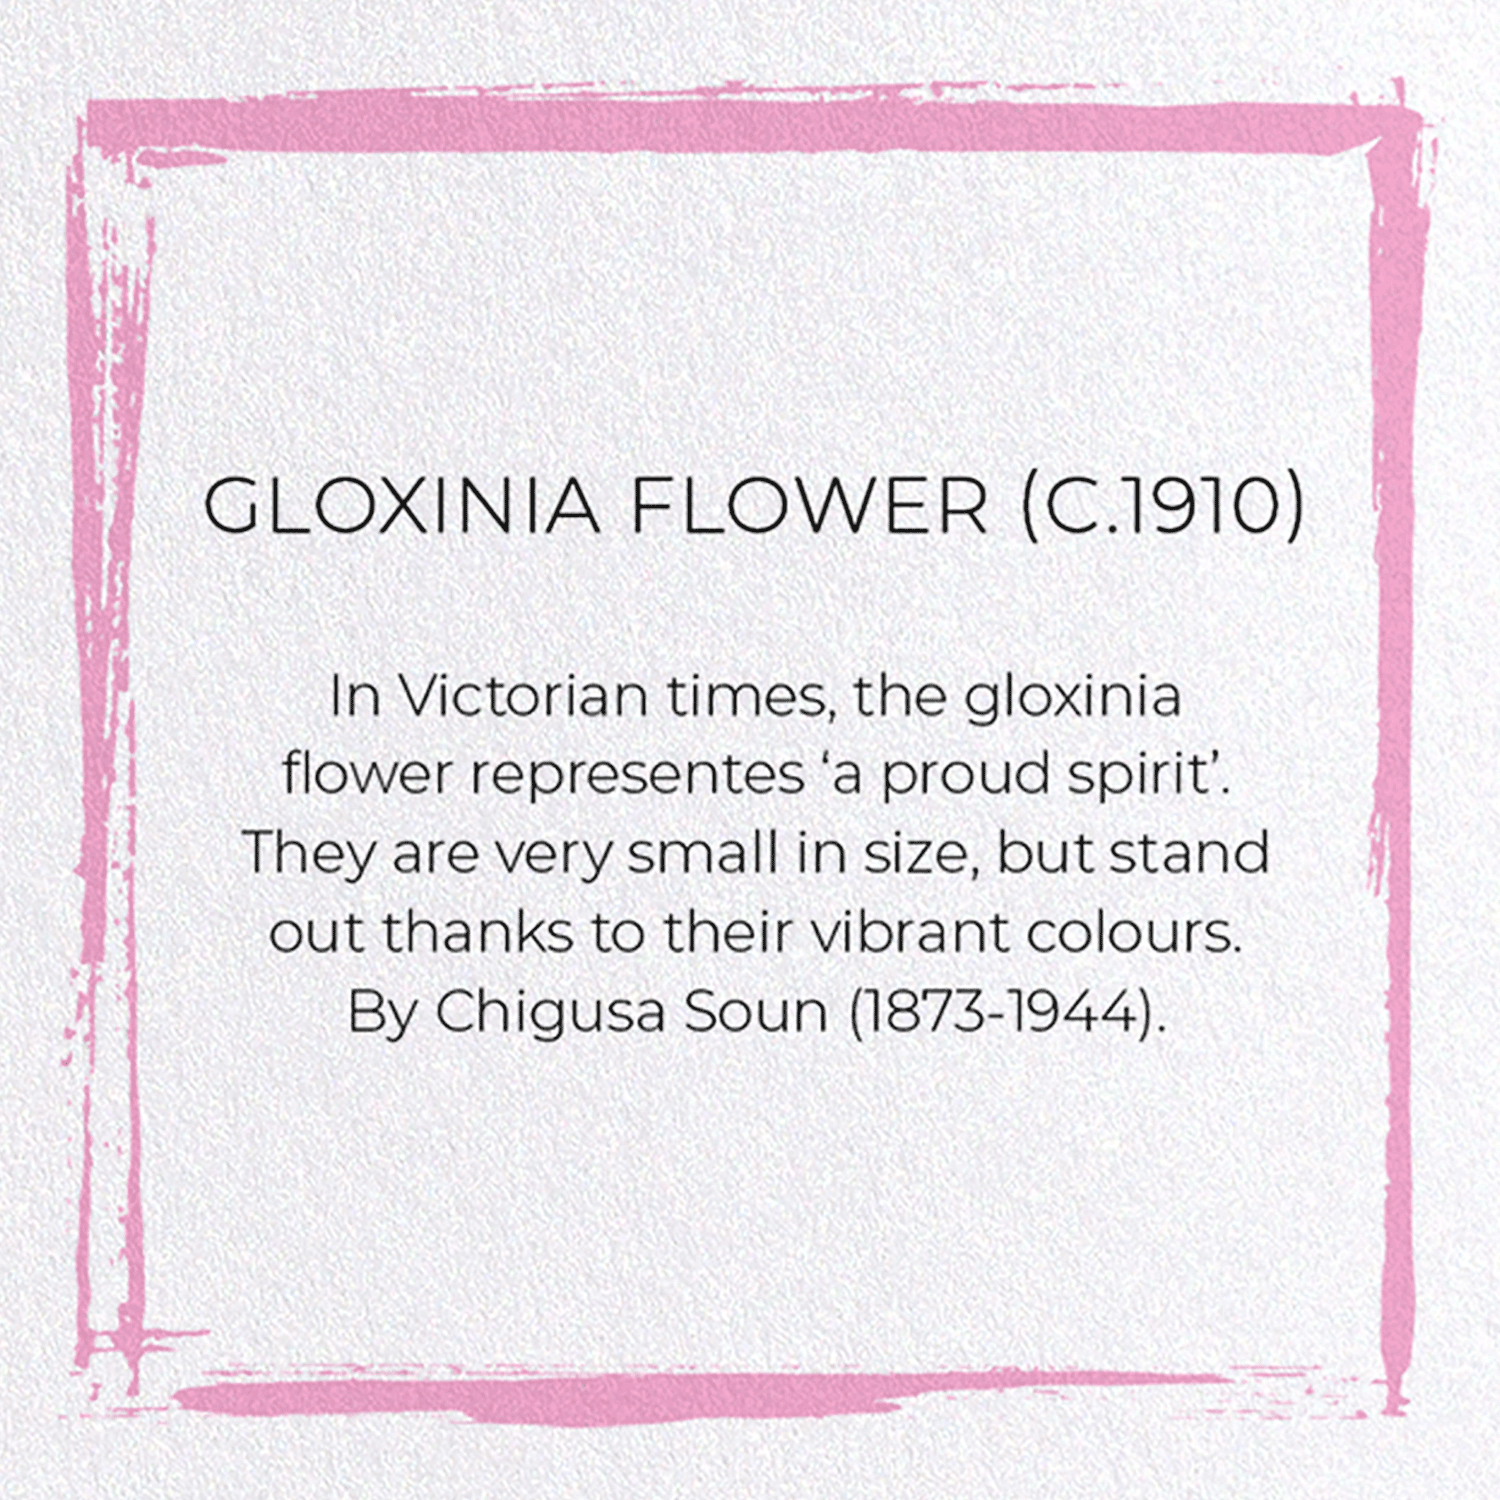 GLOXINIA FLOWER (C.1910)